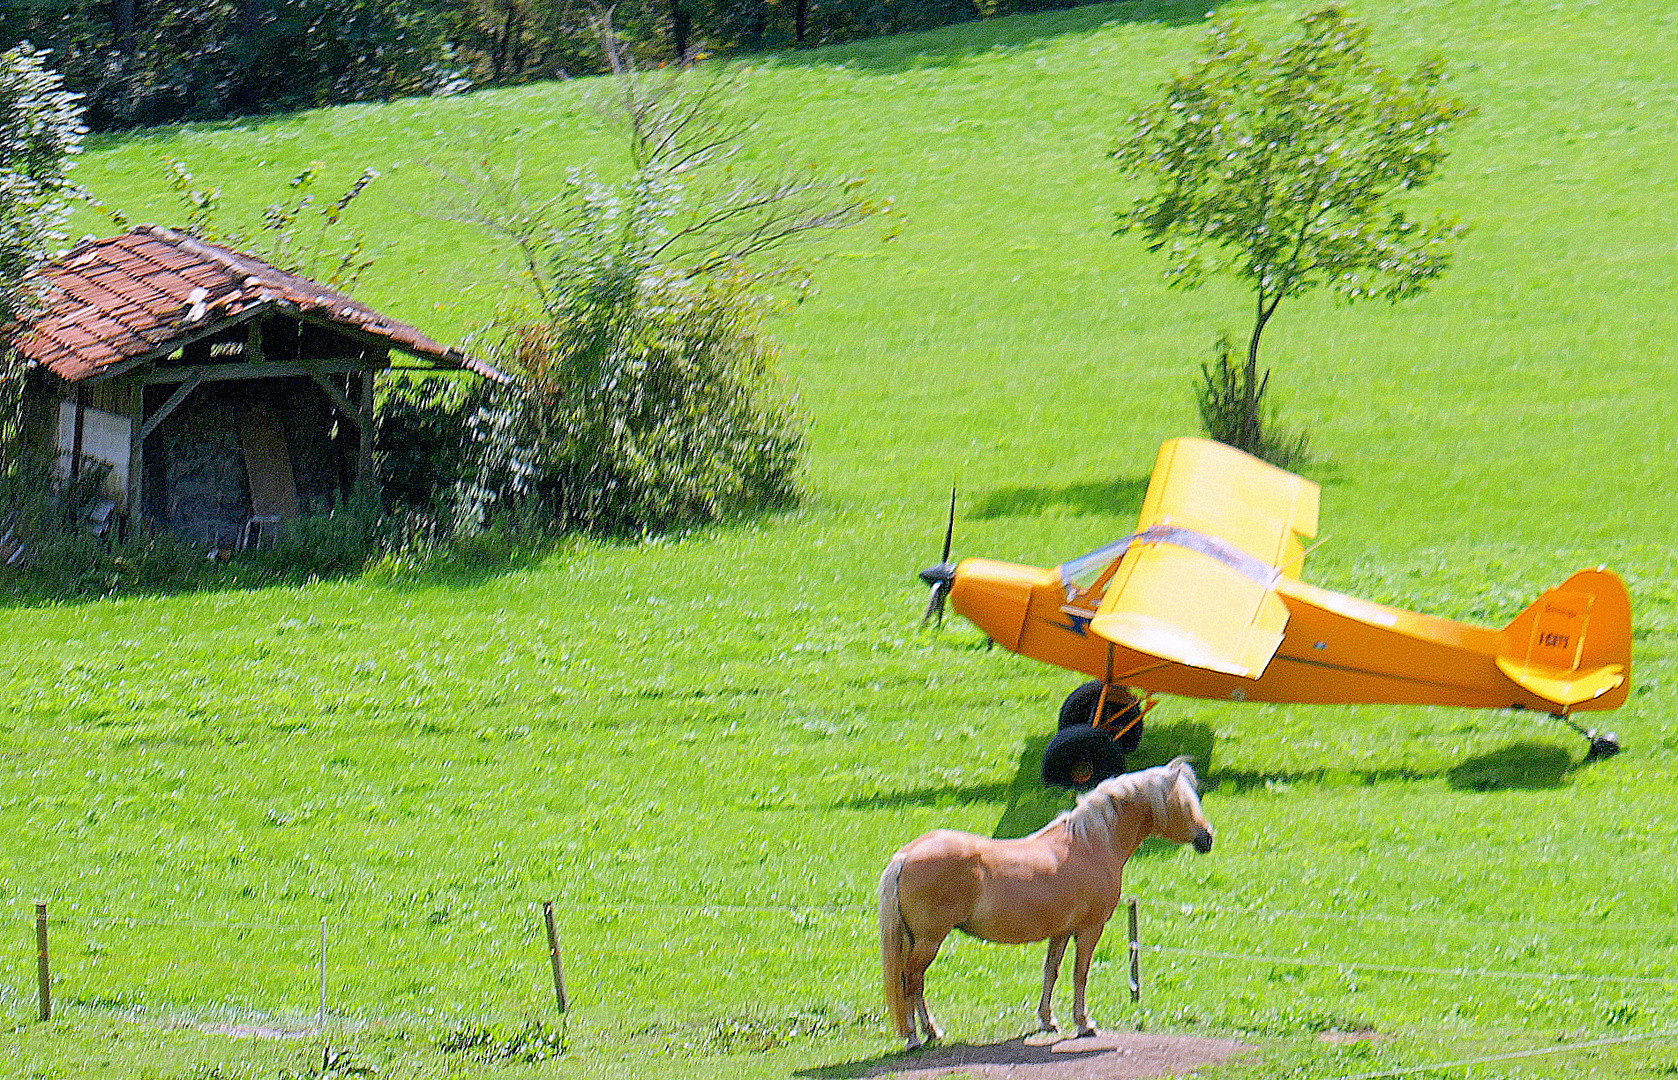 Pferd und Flugzeug